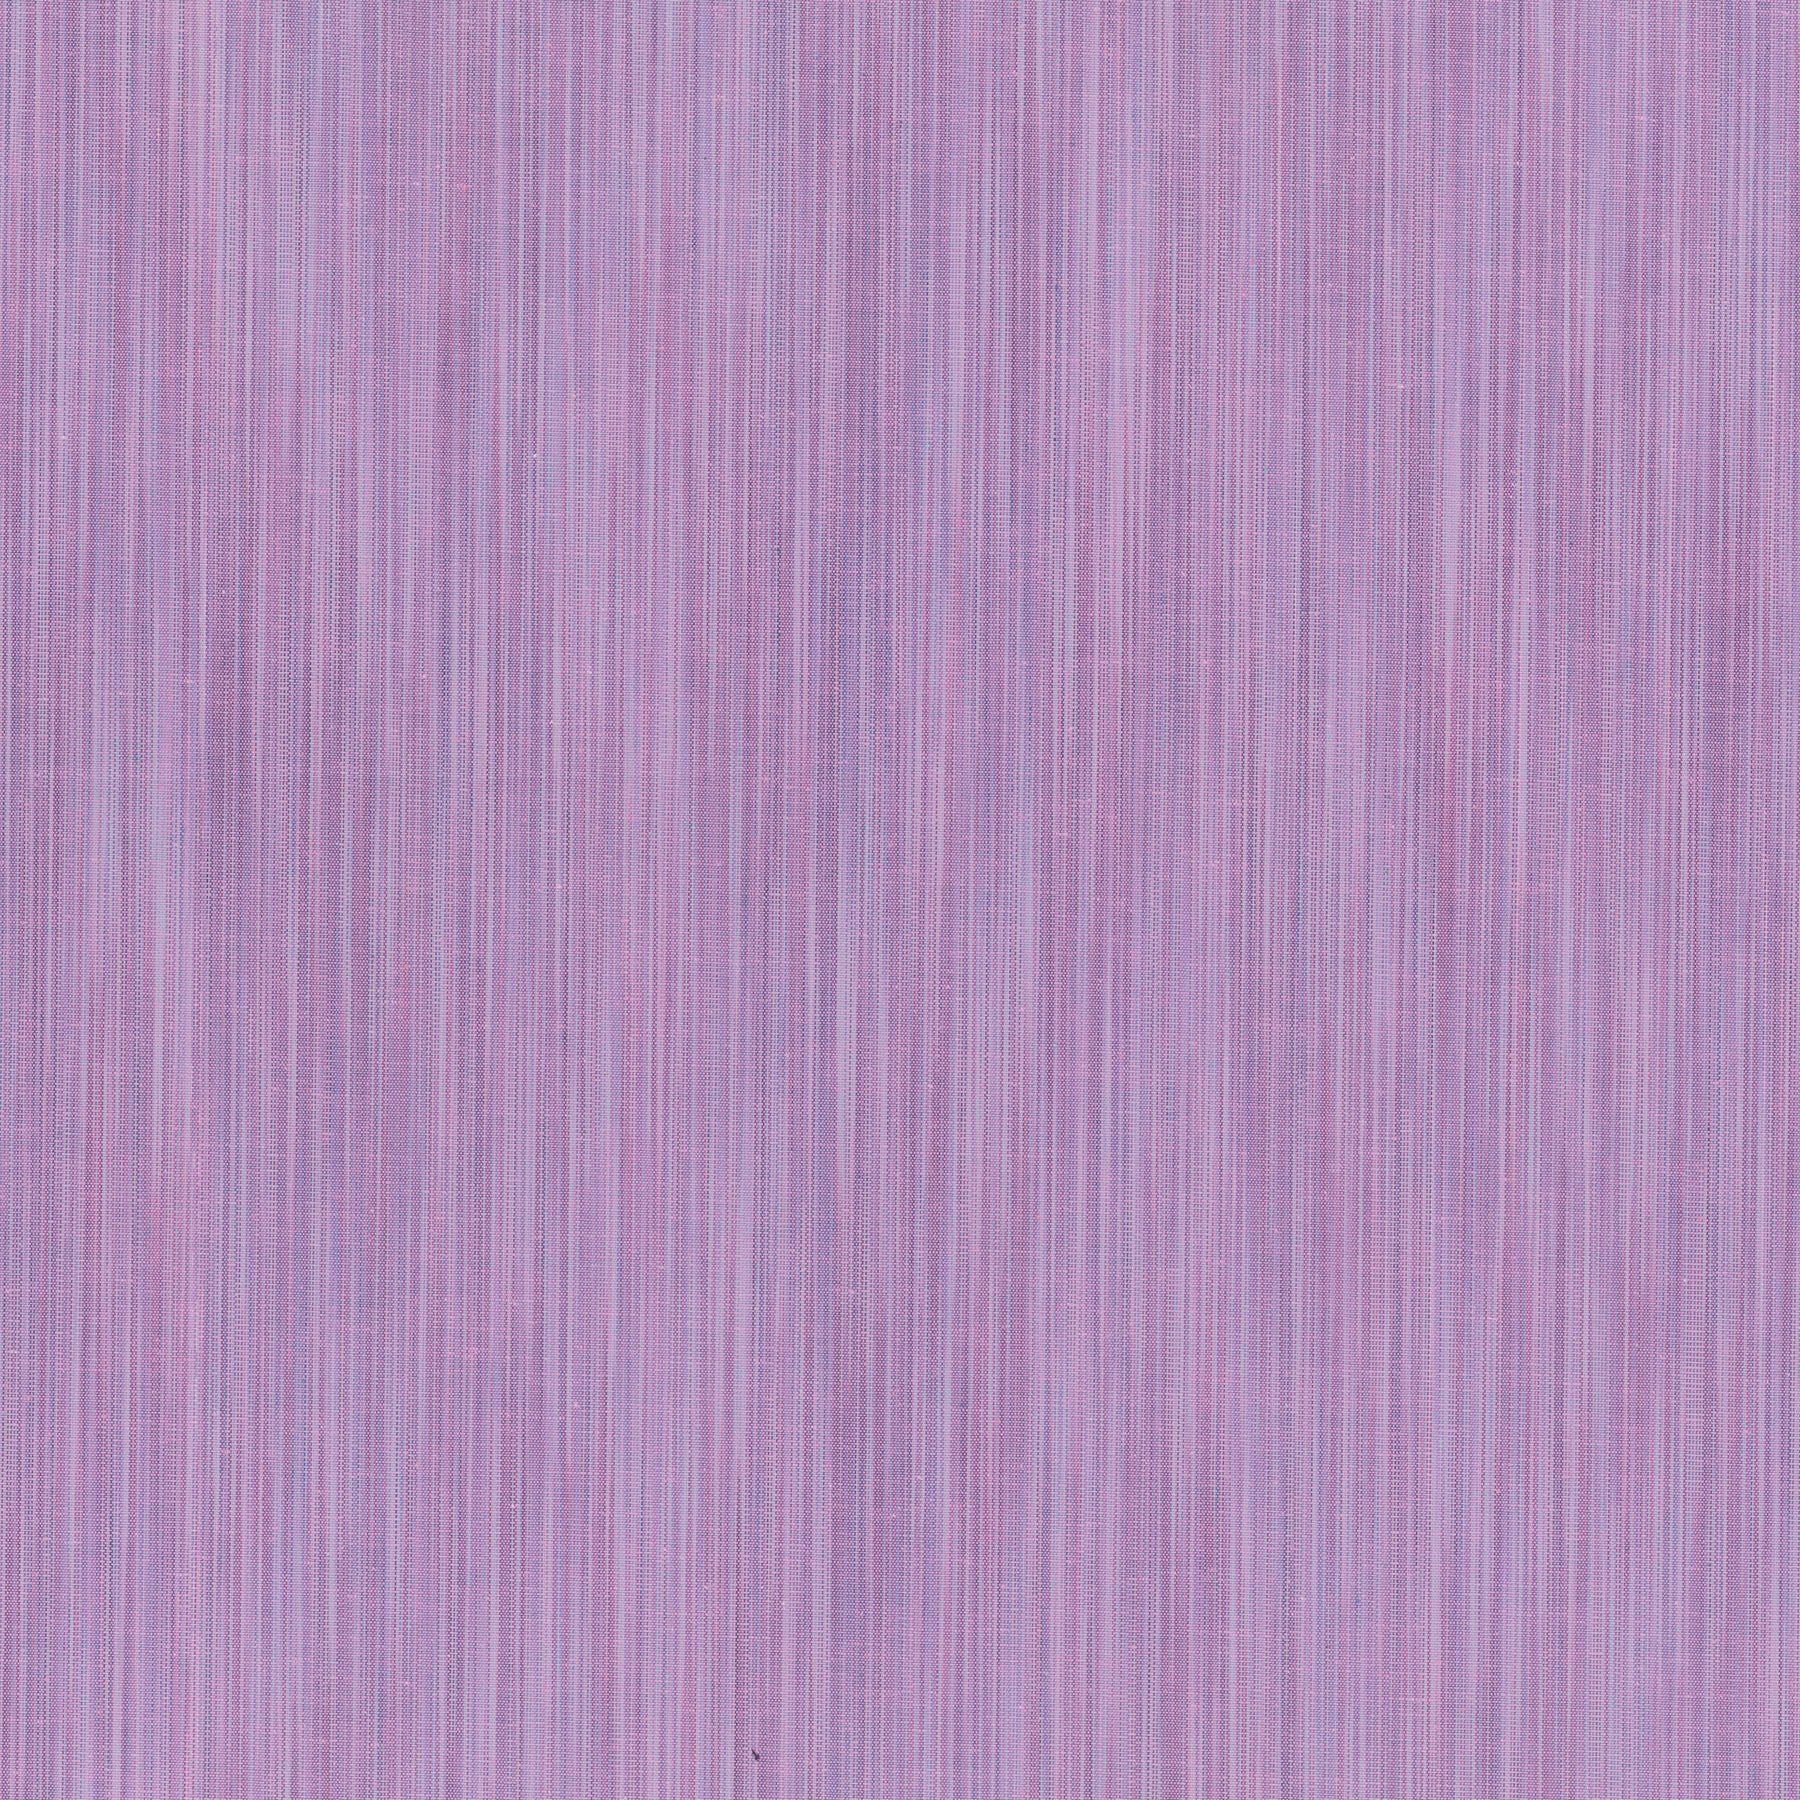 Space Dye Woven Lavender